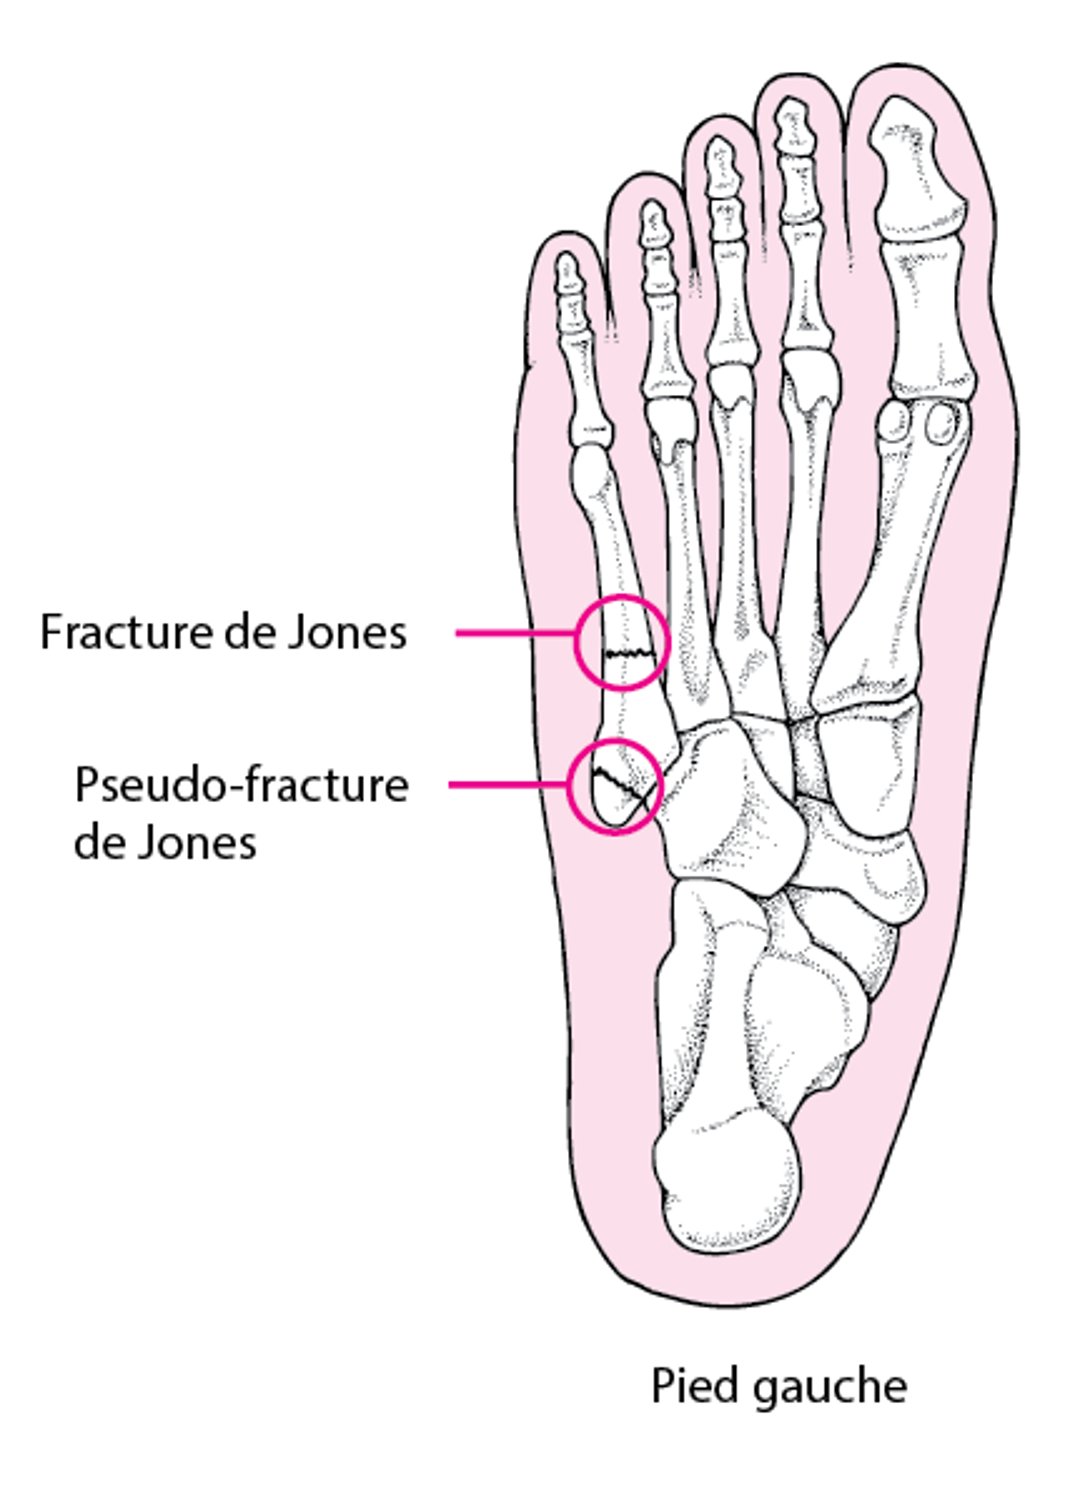 Fractures de Jones et pseudo-fractures de Jones